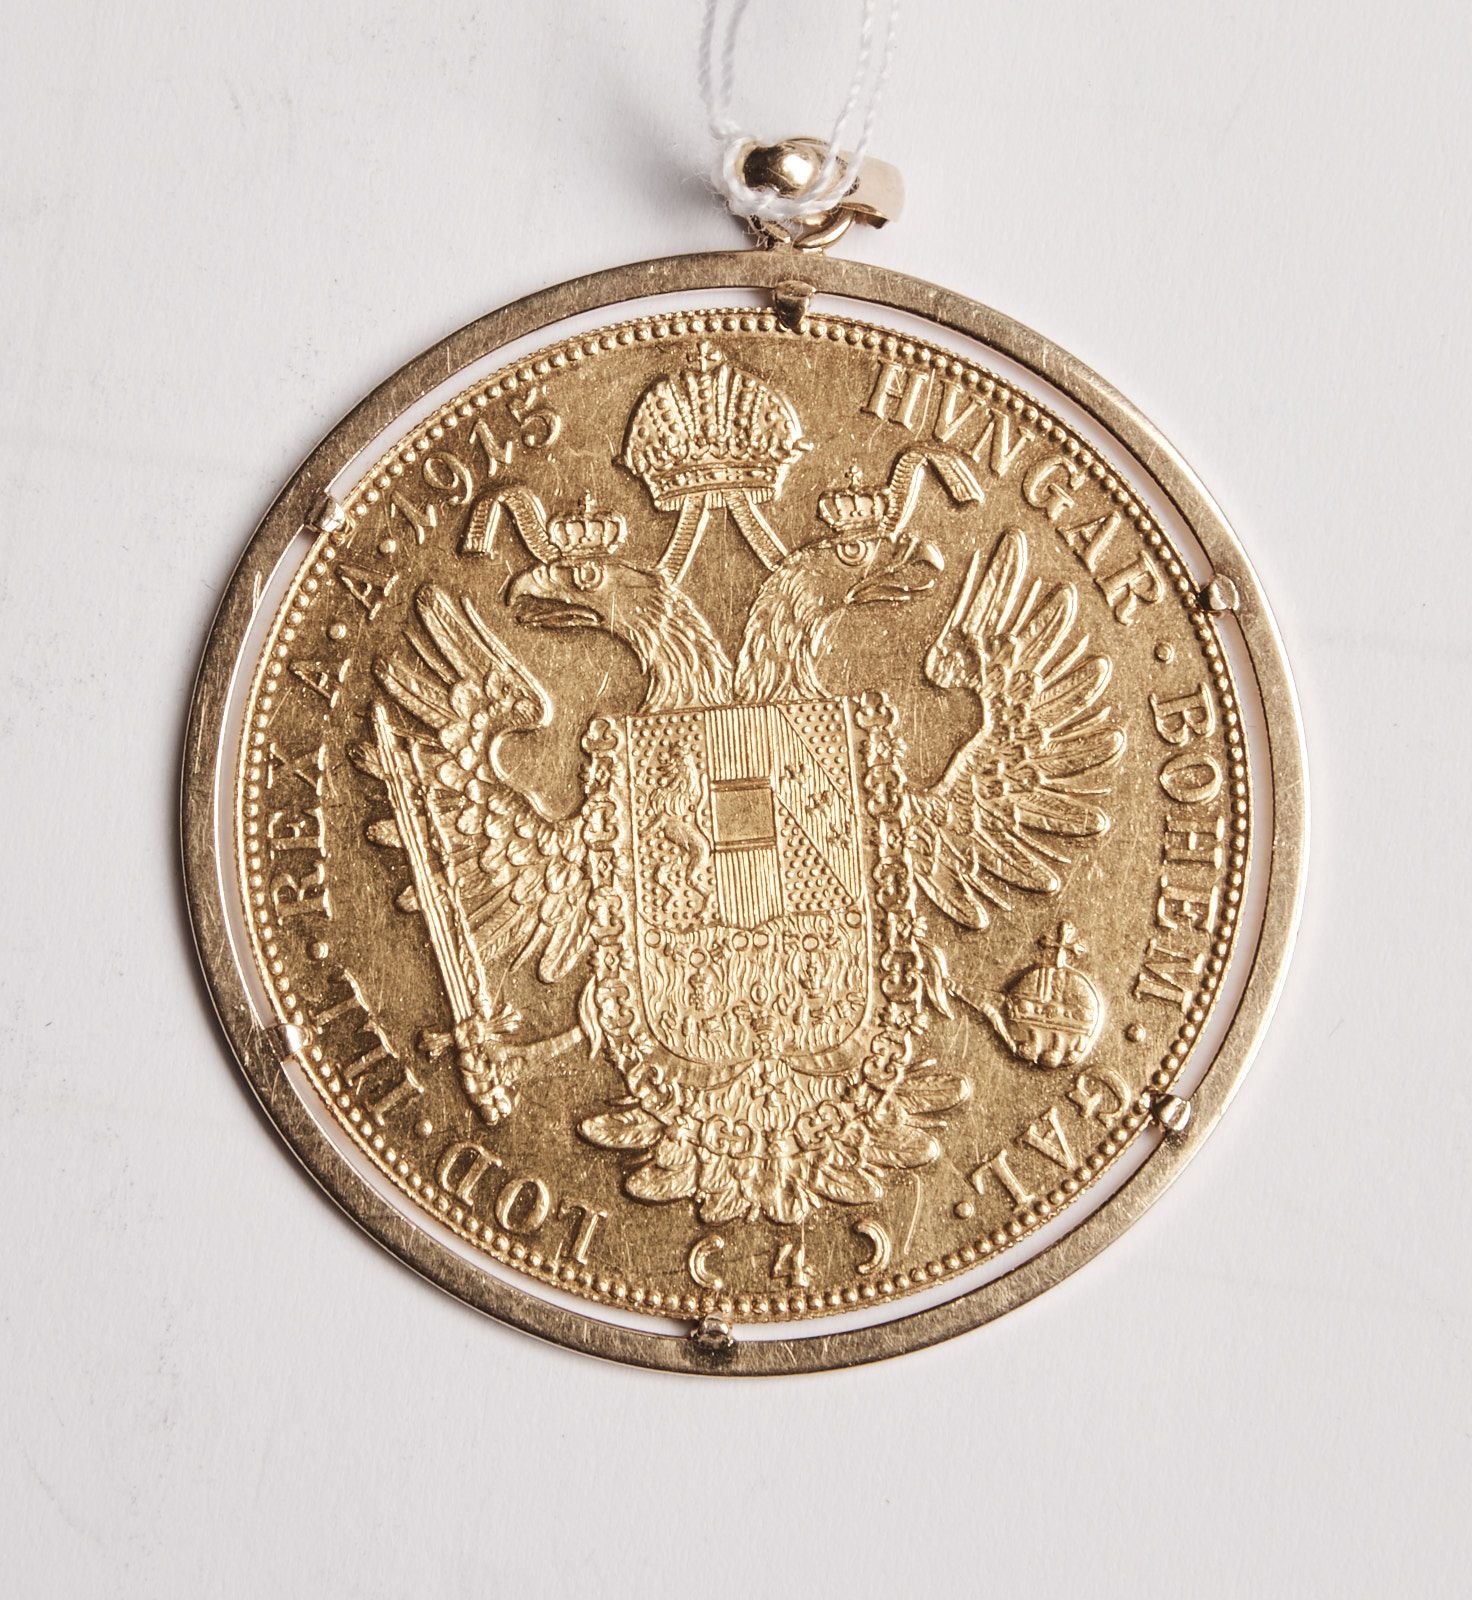 Null 40 Pièce de 4 ducats 1915, or monté or, poids 17,2 g